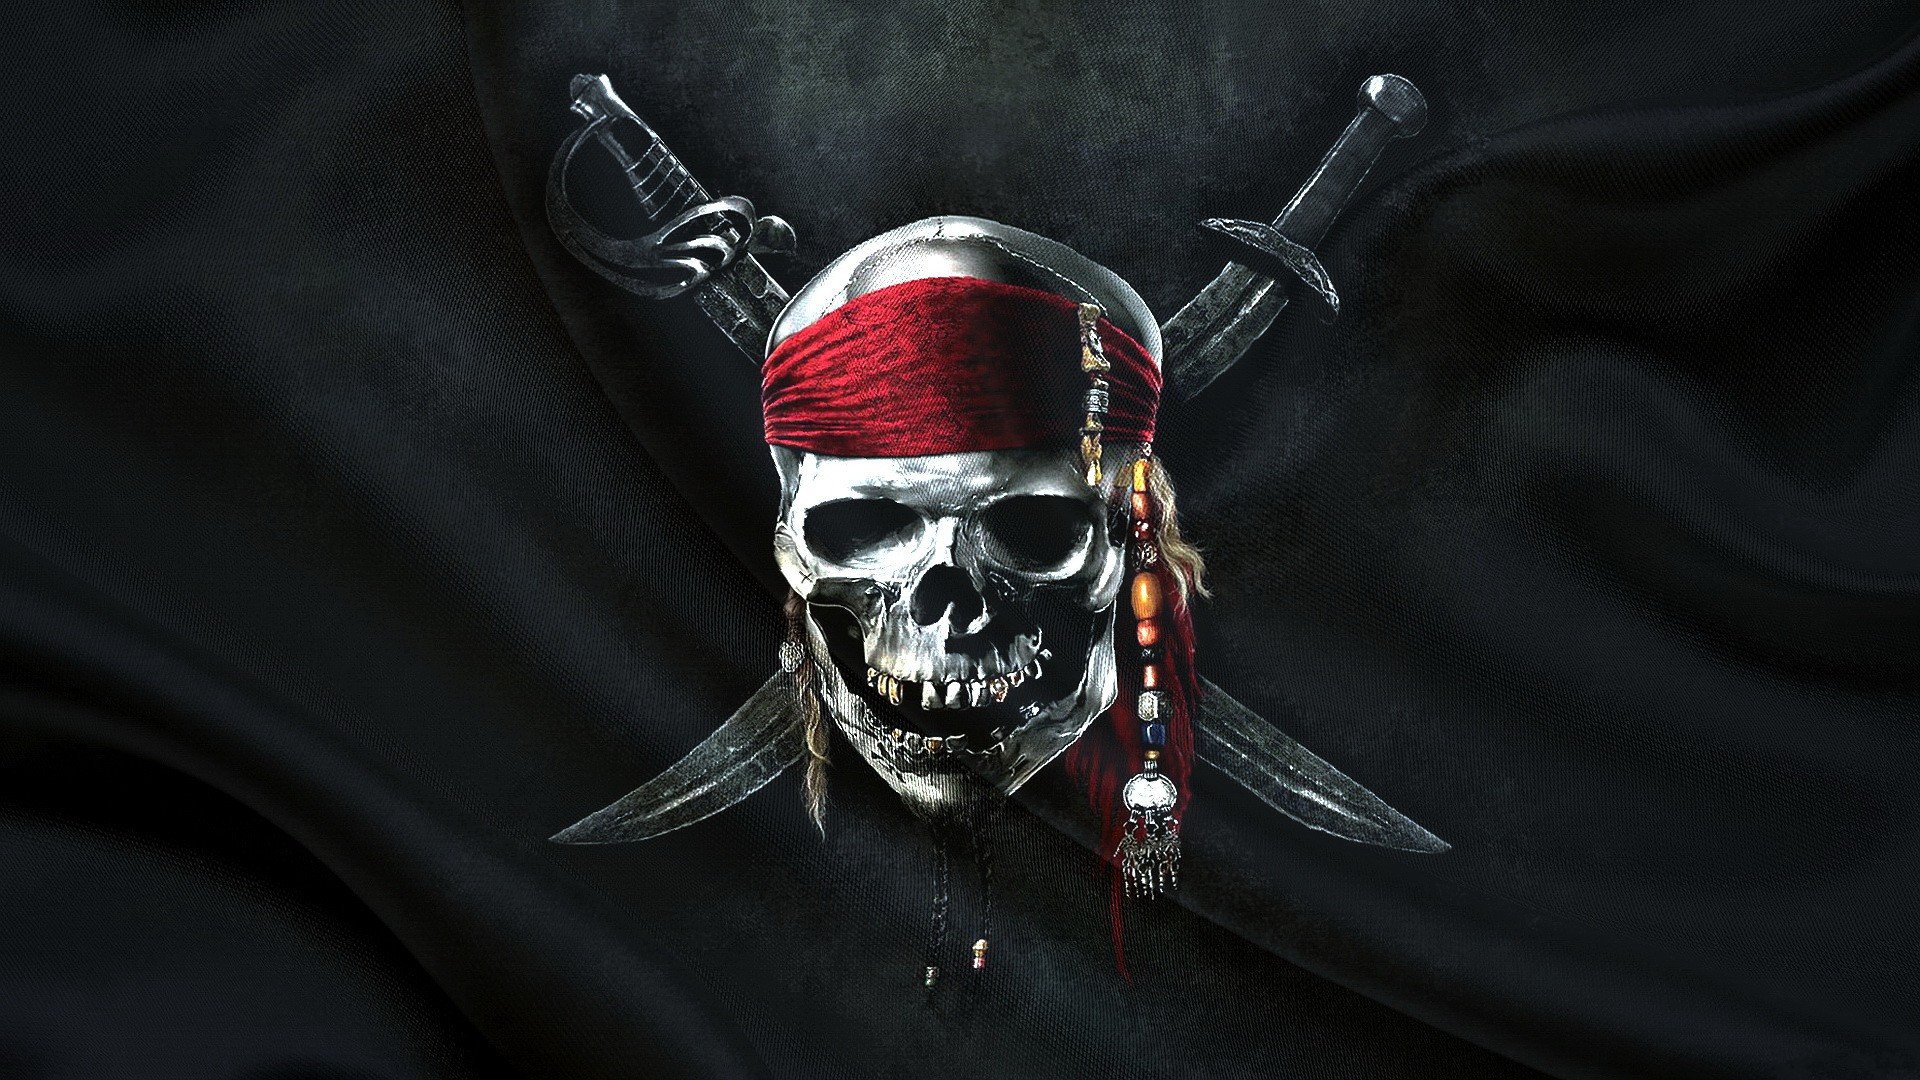 X pirates jolly roger flag artwork wallpaper jpg kb